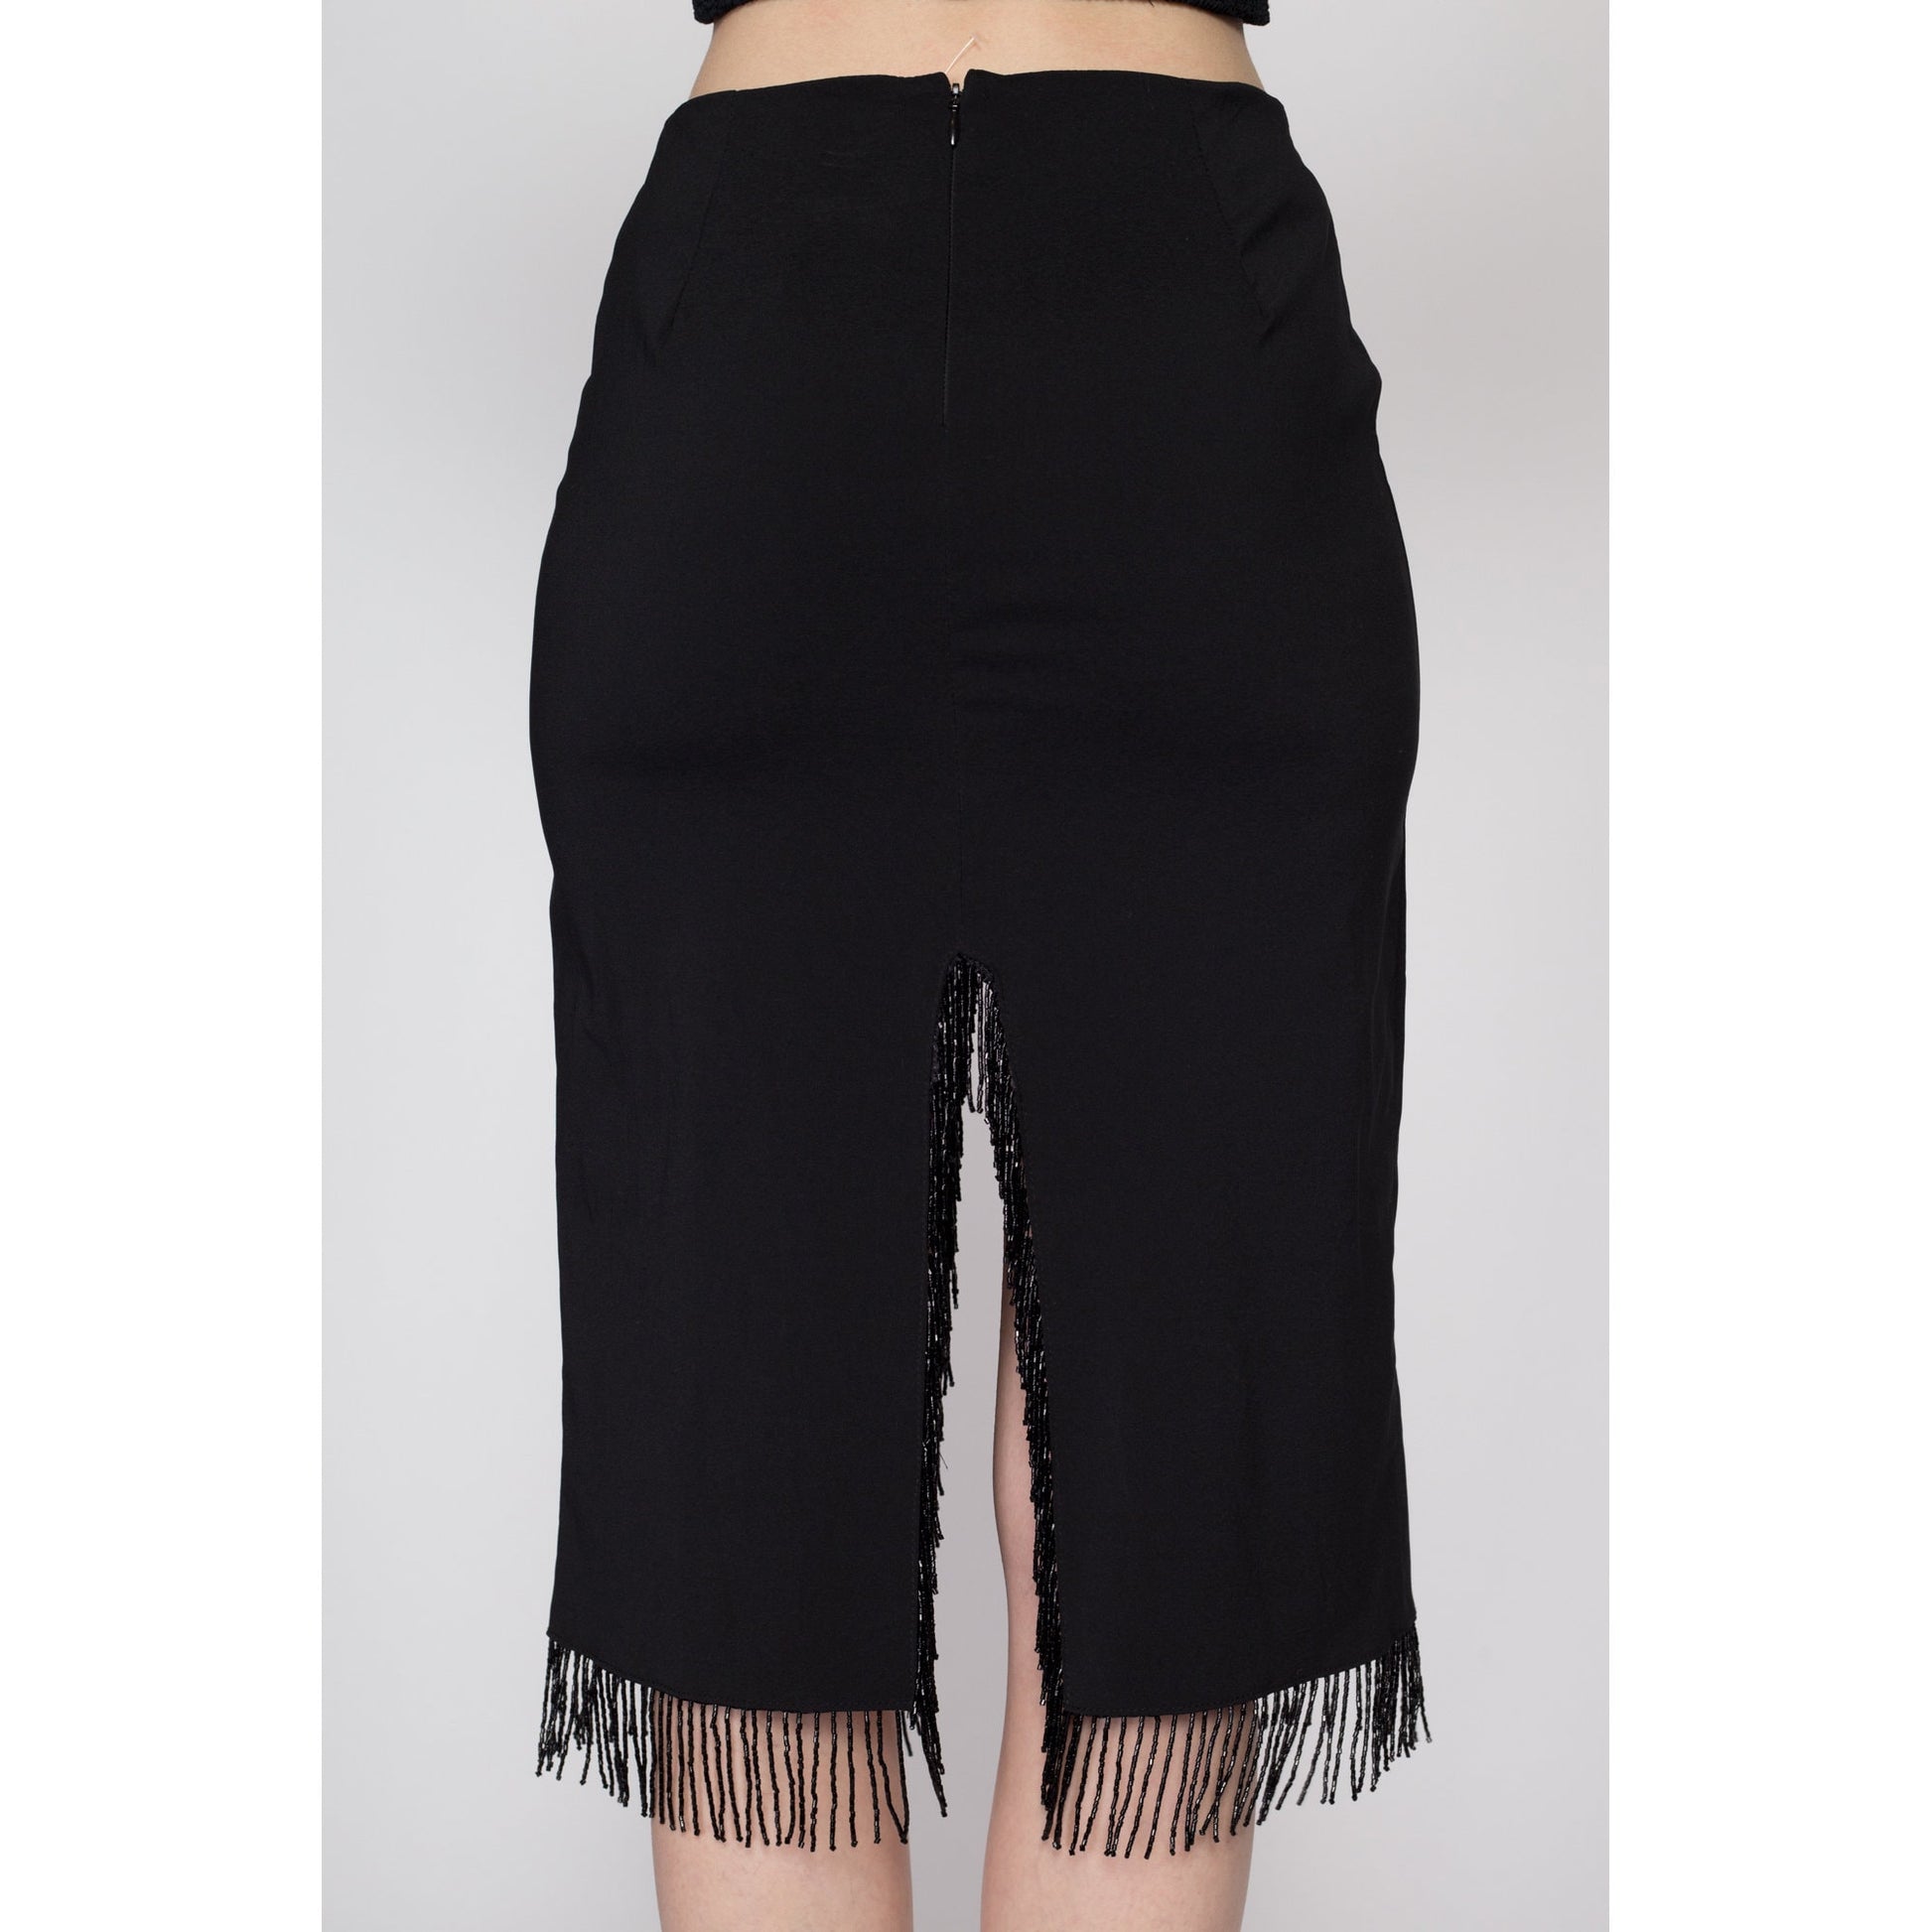 Small 90s Black Beaded Fringe Slit Skirt | Vintage High Waisted Knee Length Midi Pencil Skirt